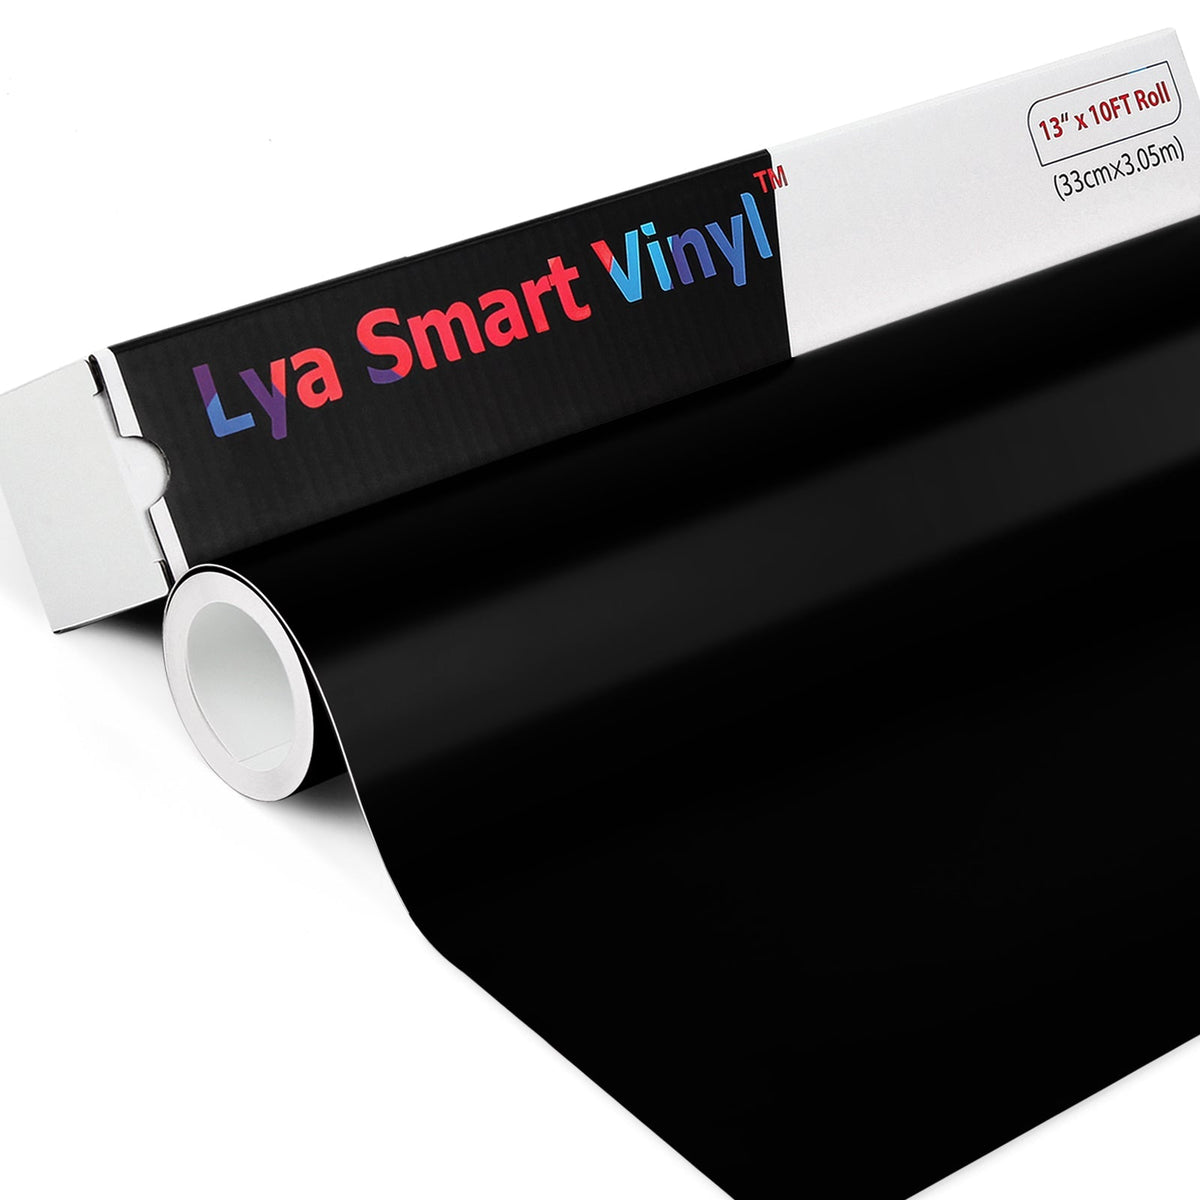 Cricut Joy Machine with Smart Vinyl Rolls, Standard Grip Cutting Mat a